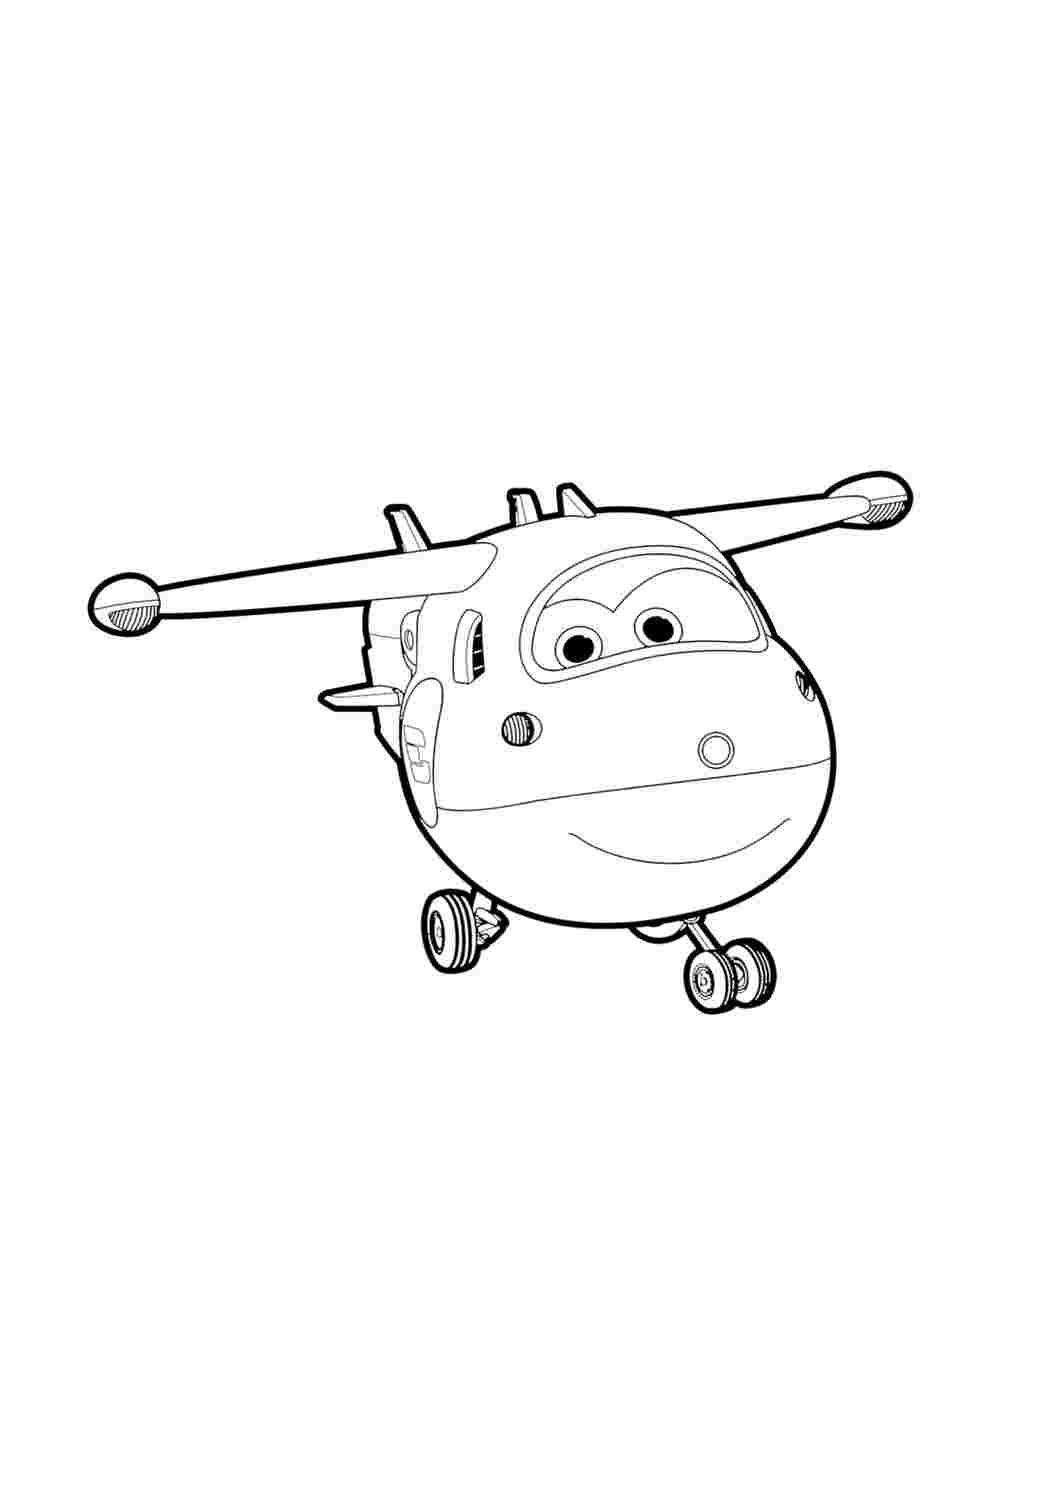 Как нарисовать ВЕРТОЛЕТ / Мультик Раскраска ВЕРТОЛЁТ для детей / How to Draw a Helicopter